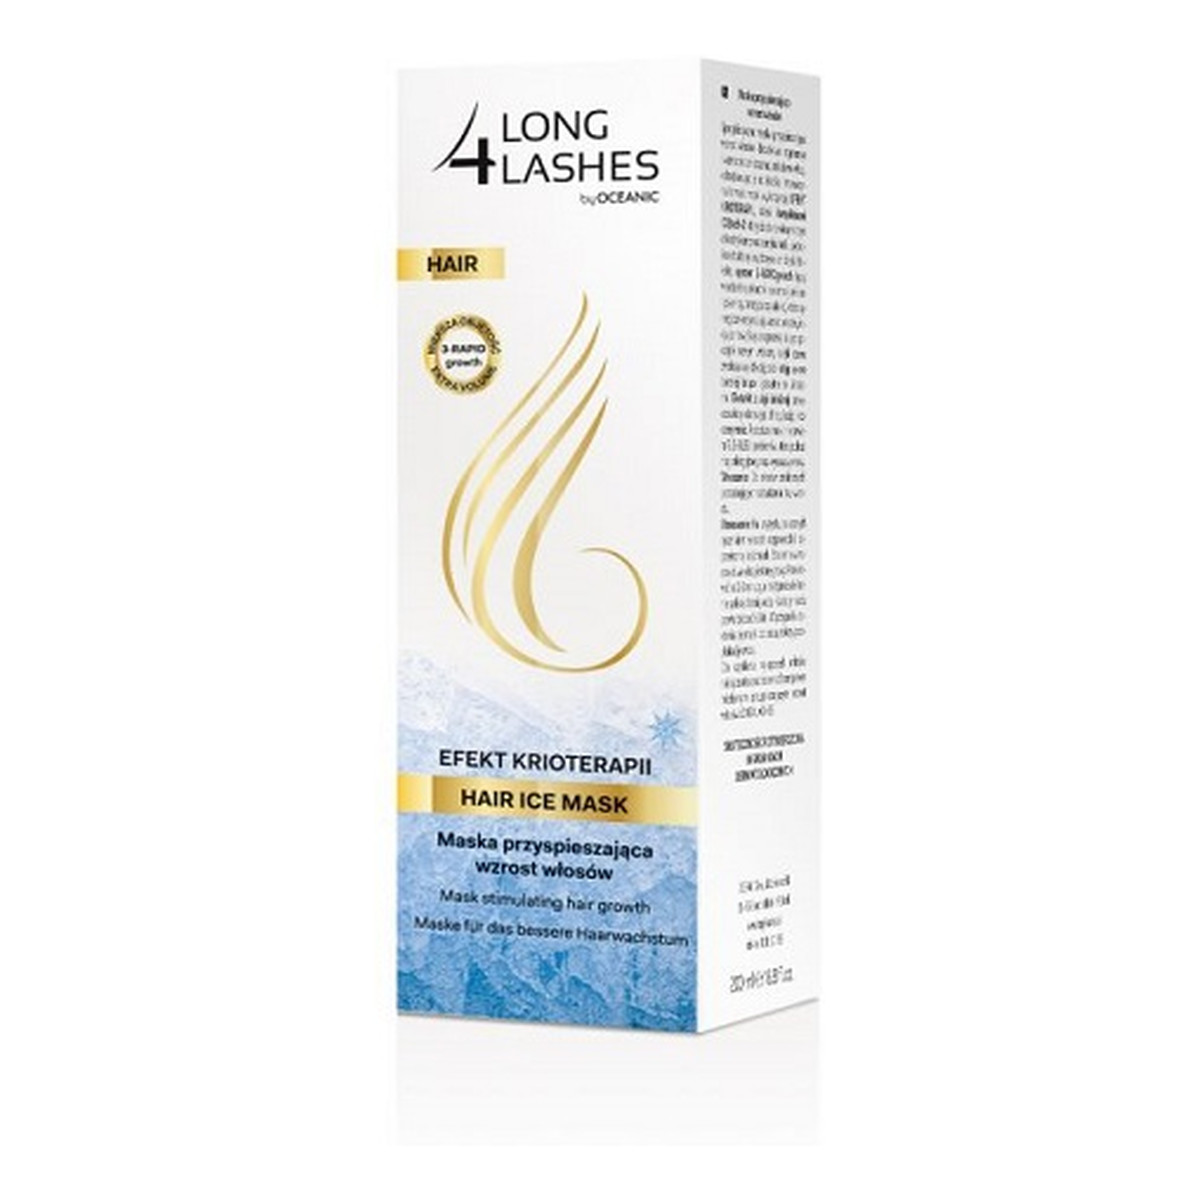 AA Long 4 Lashes Hair Ice Mask efekt krioterapii maska przyspieszająca wzrost włosów 200ml